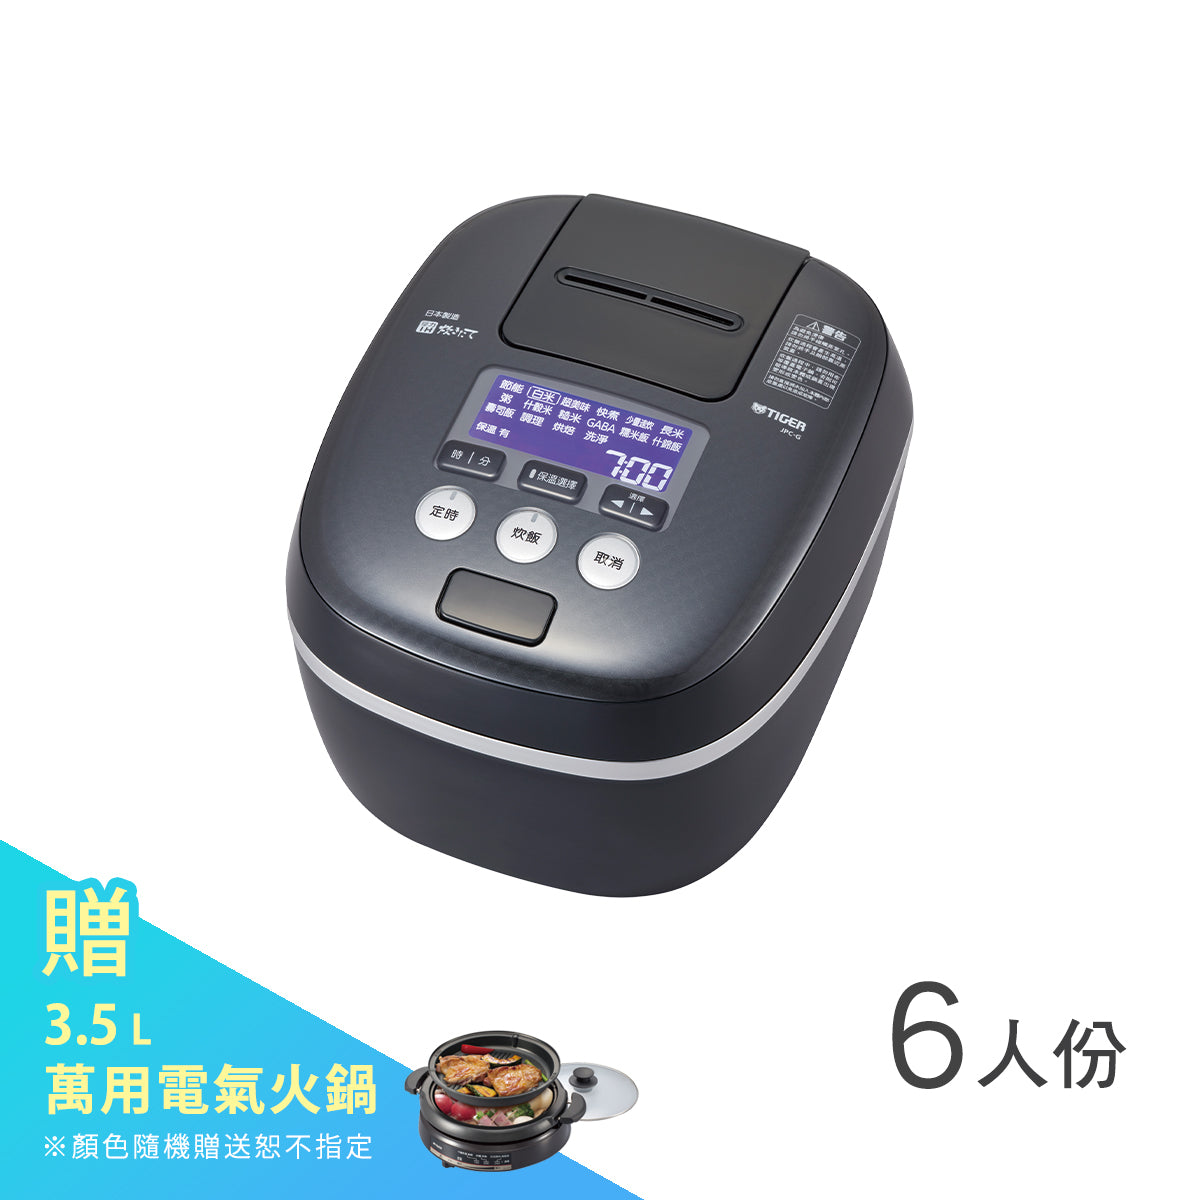 【日本製】6人份 可變式雙重壓力IH炊飯電子鍋 (JPC-G10R)